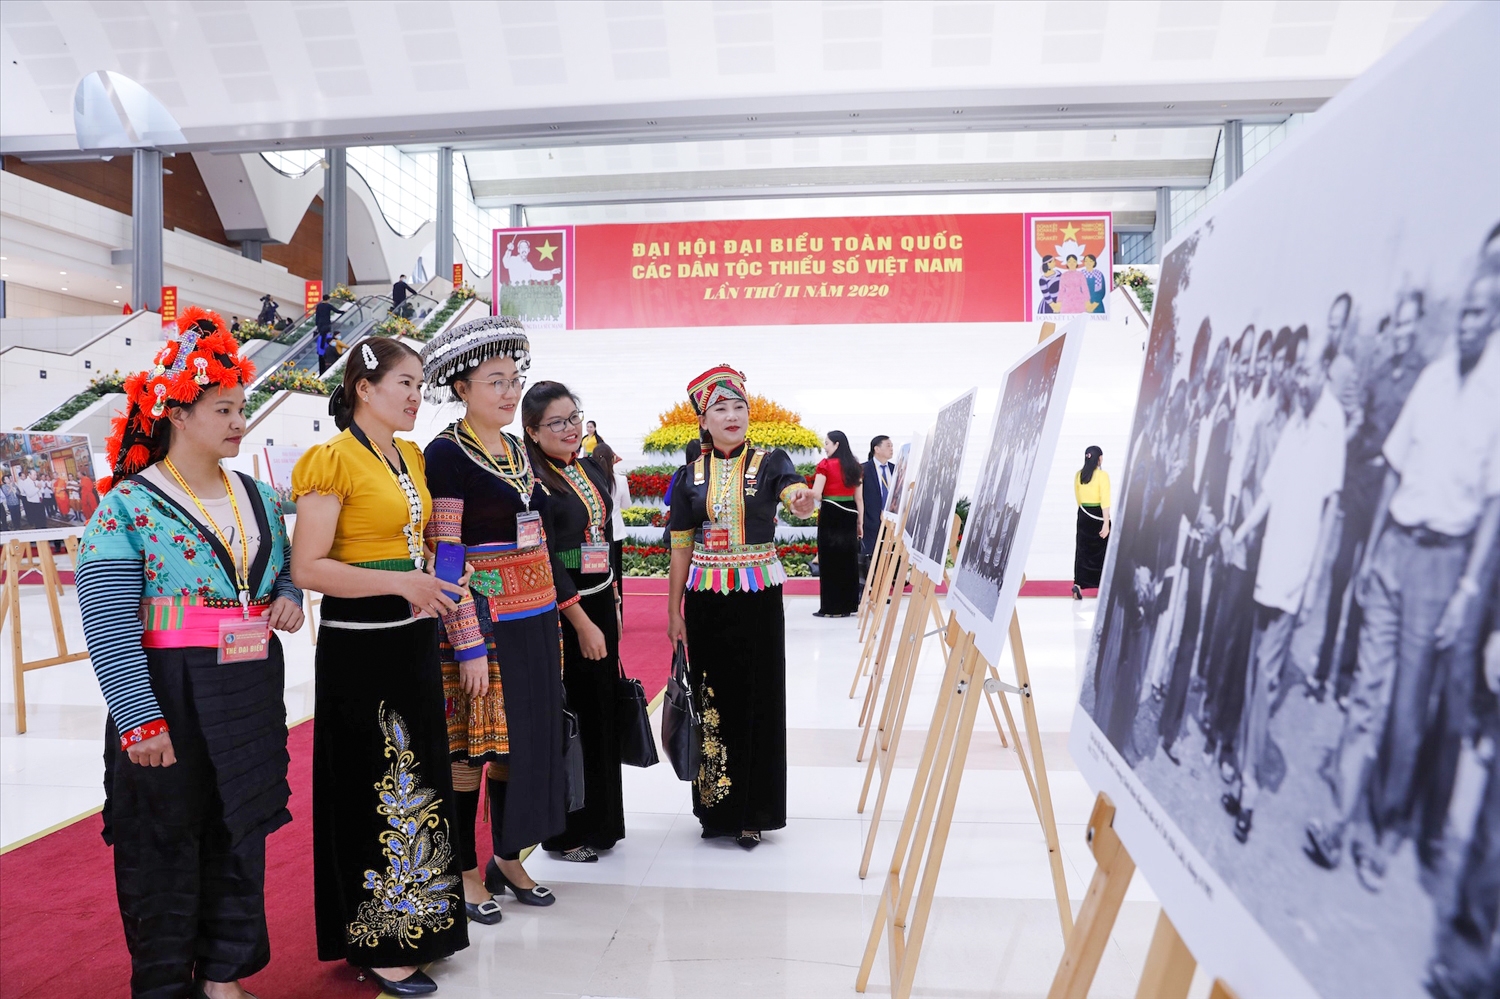 Hiện Đại hội đại biểu toàn quốc các DTTS Việt Nam được tổ chức định kỳ 10 năm một lần. (Trong ảnh: Các đại biểu dự Đại hội đại biểu toàn quốc các DTTS Việt Nam lần thứ 2, năm 2020)